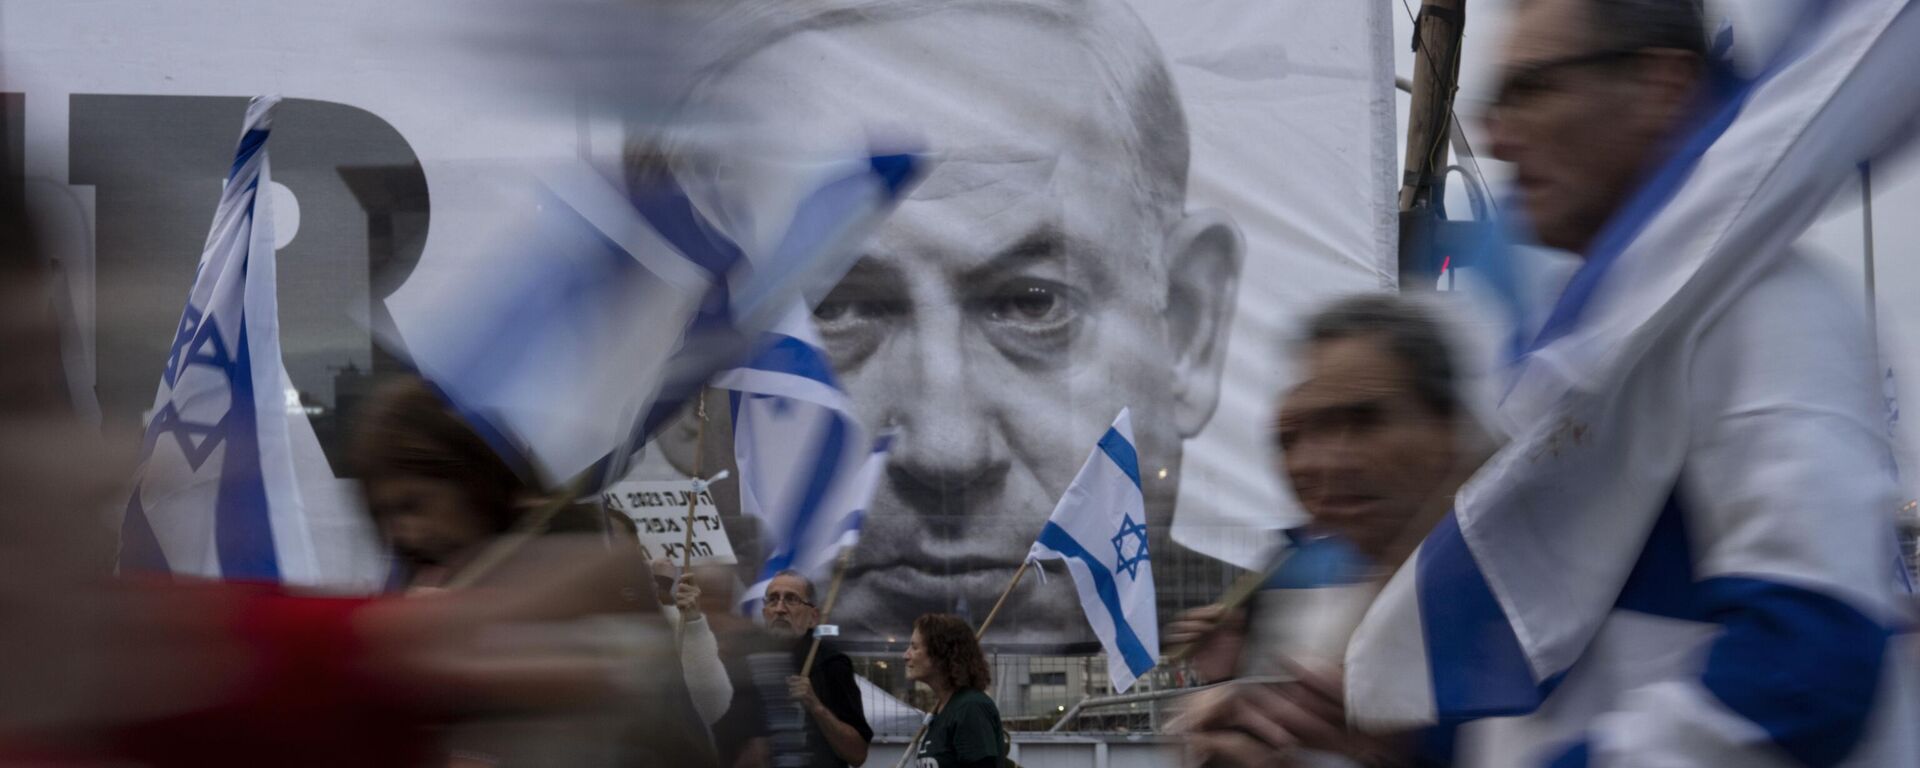 Демонстранты с  флагами Израиля рядом с баннером с изображением премьер-министра Биньямина Нетаньяху во время акции  против реформы судебной системы в Тель-Авиве, Израиль - Sputnik Молдова, 1920, 28.03.2023